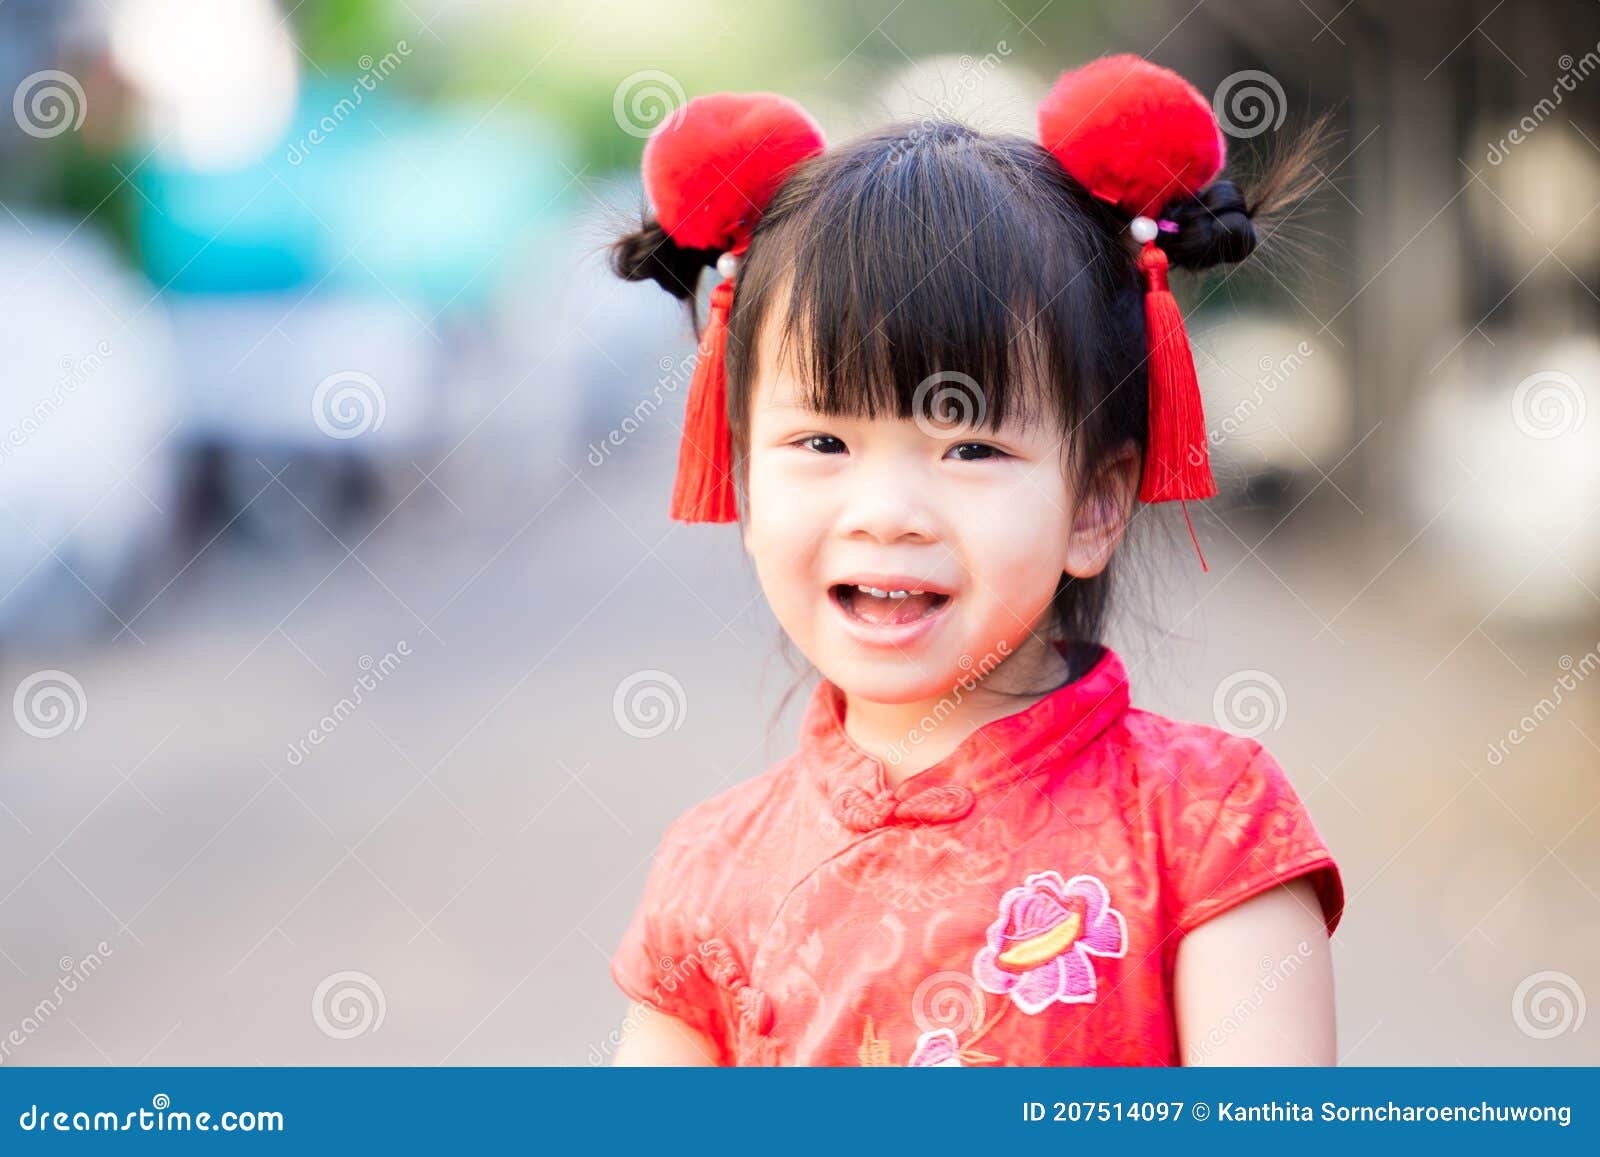 verkeer pomp Oppervlakkig Kinderen Glimlachen Nieuwjaar Op Chinees. Kinderkleding Met Een Chinese  Jurk of Een Jongsam. Stock Afbeelding - Image of haar, chinees: 207514097